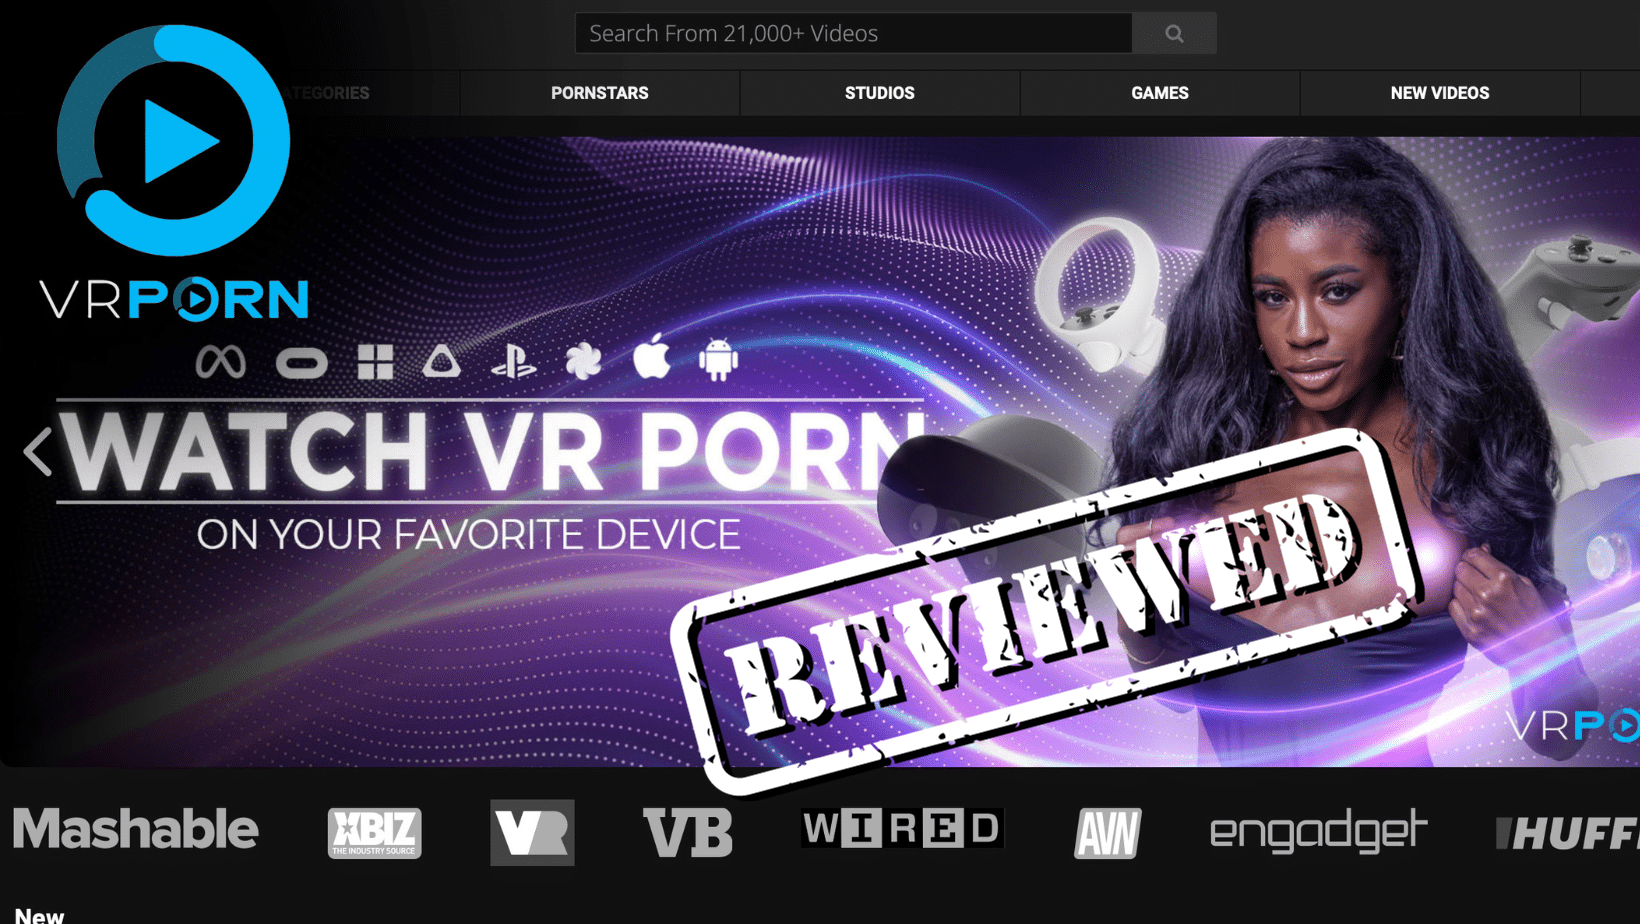 Www Dot Com Vedio S D - VRPorn.com Review: Is It a Legit VR Porn Site? | Bedbible.com